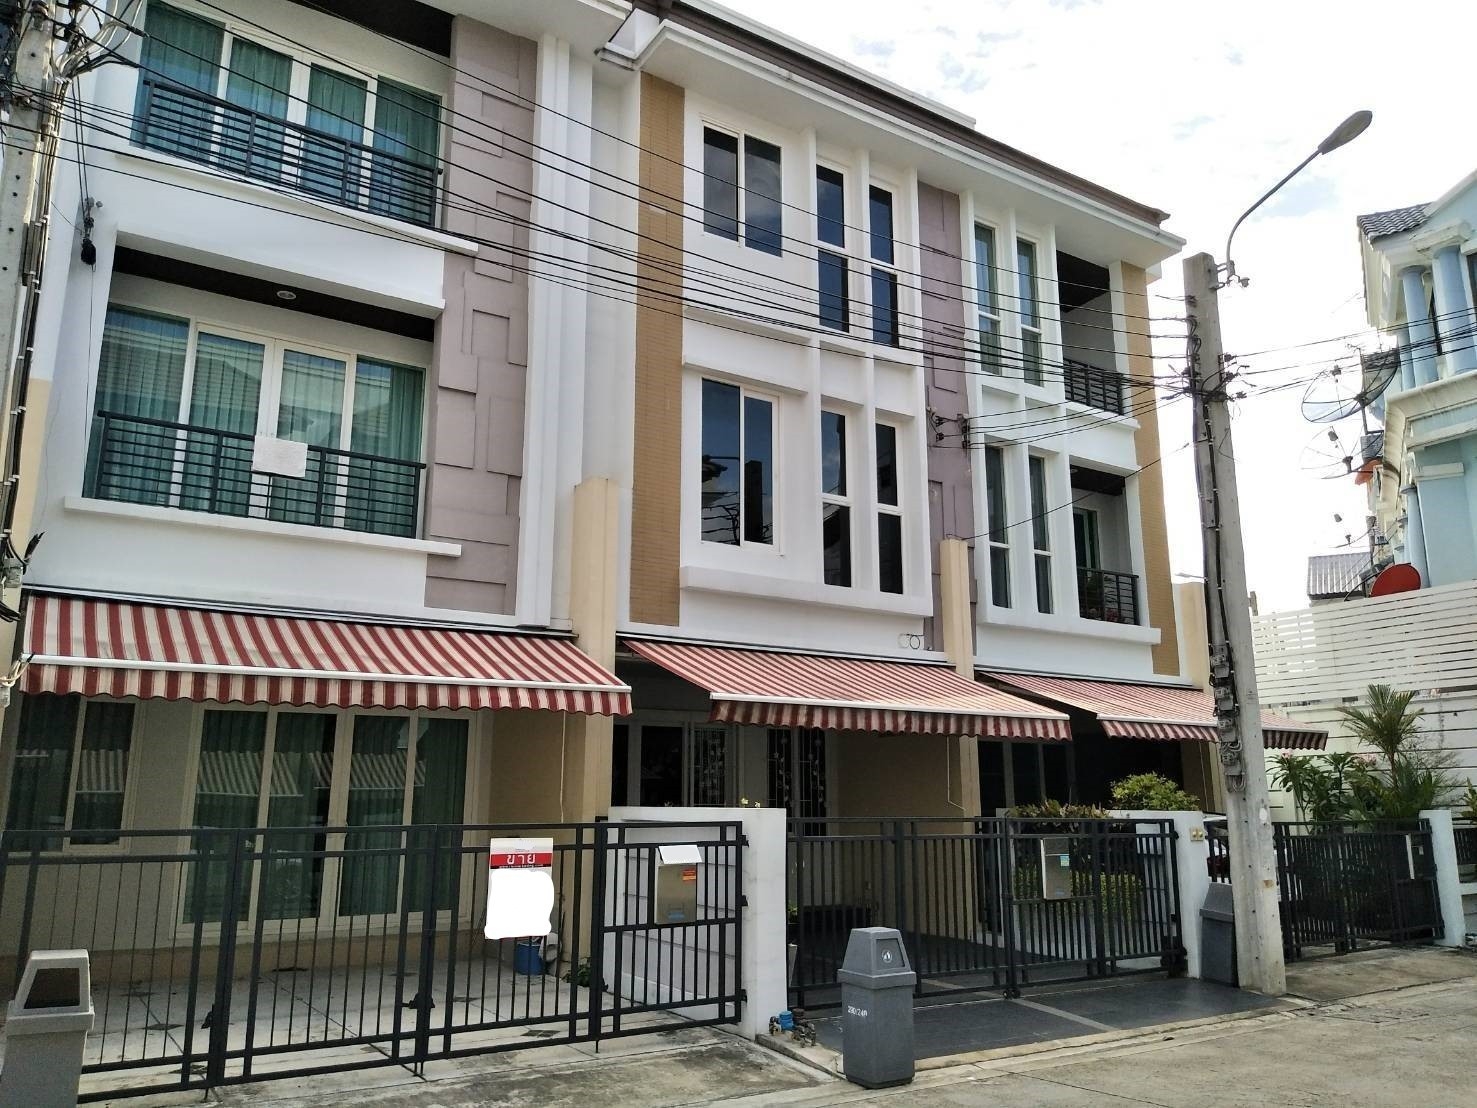 Baan Klang Muang S-Sense Rama 9 - Ladprao 别墅出售 3卧160平米 650万泰铢